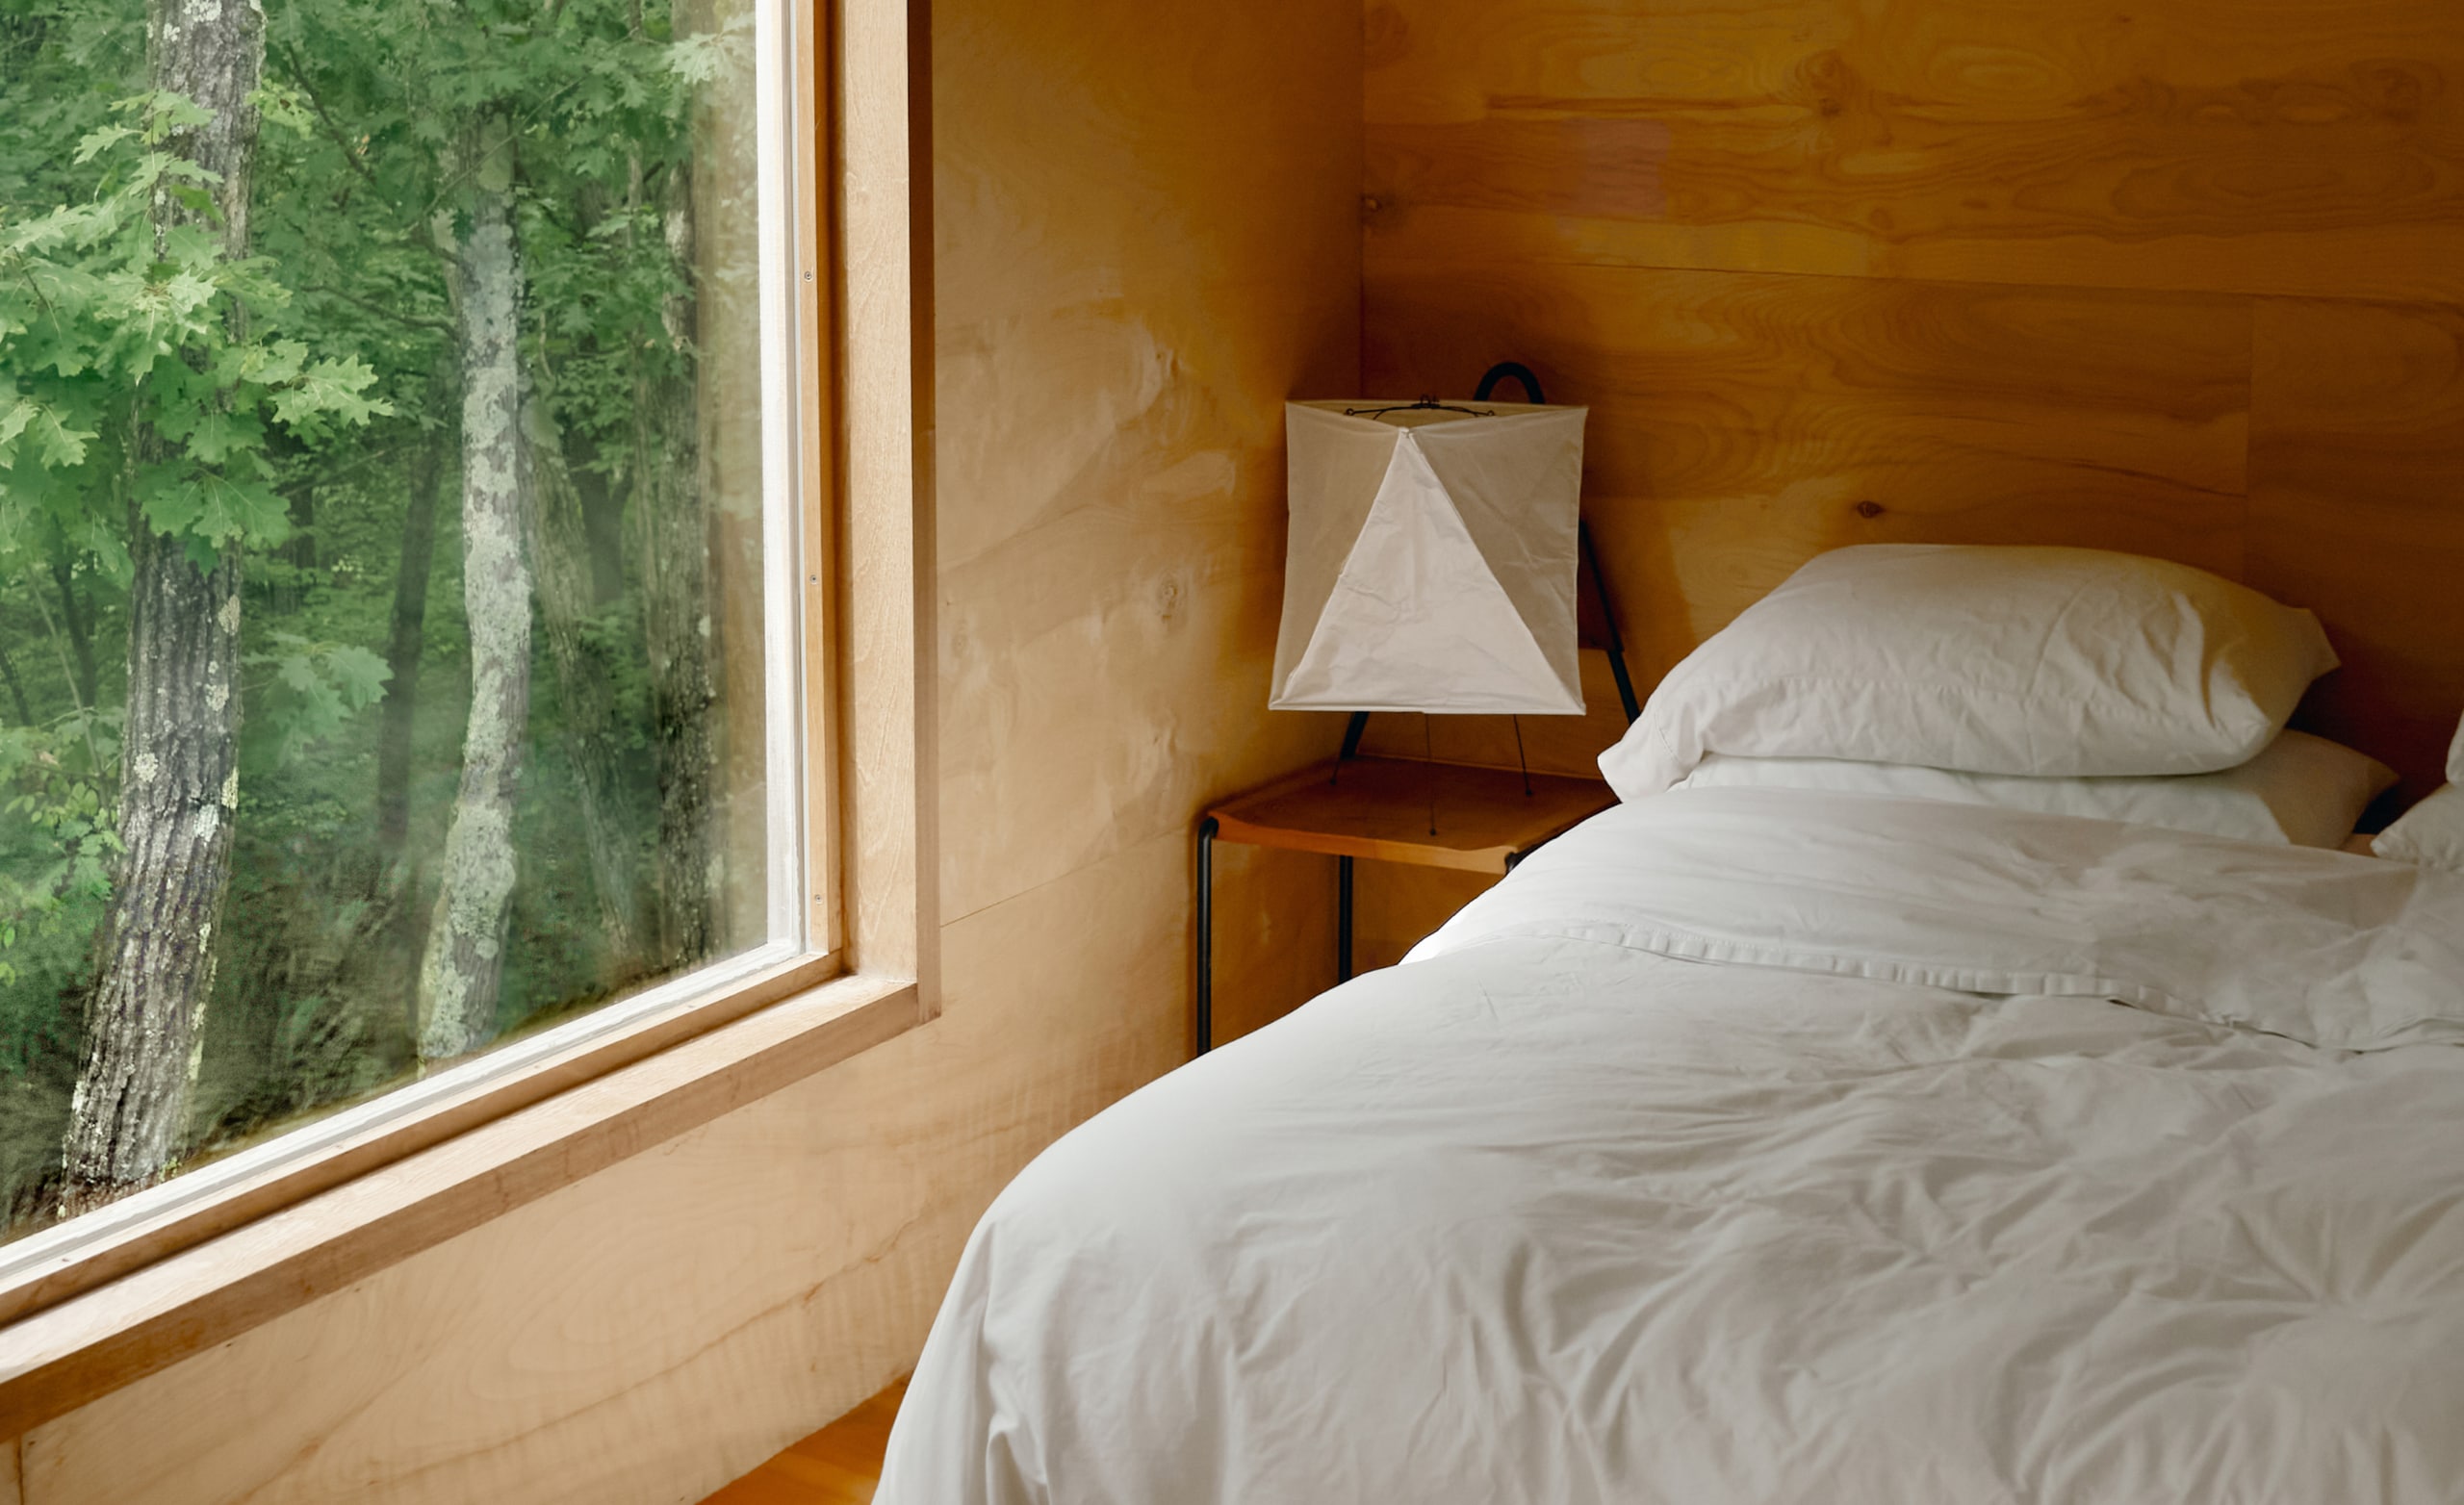 Только что заправленная белыми простынями кровать в спальне, из большого окна видно деревья на улице.